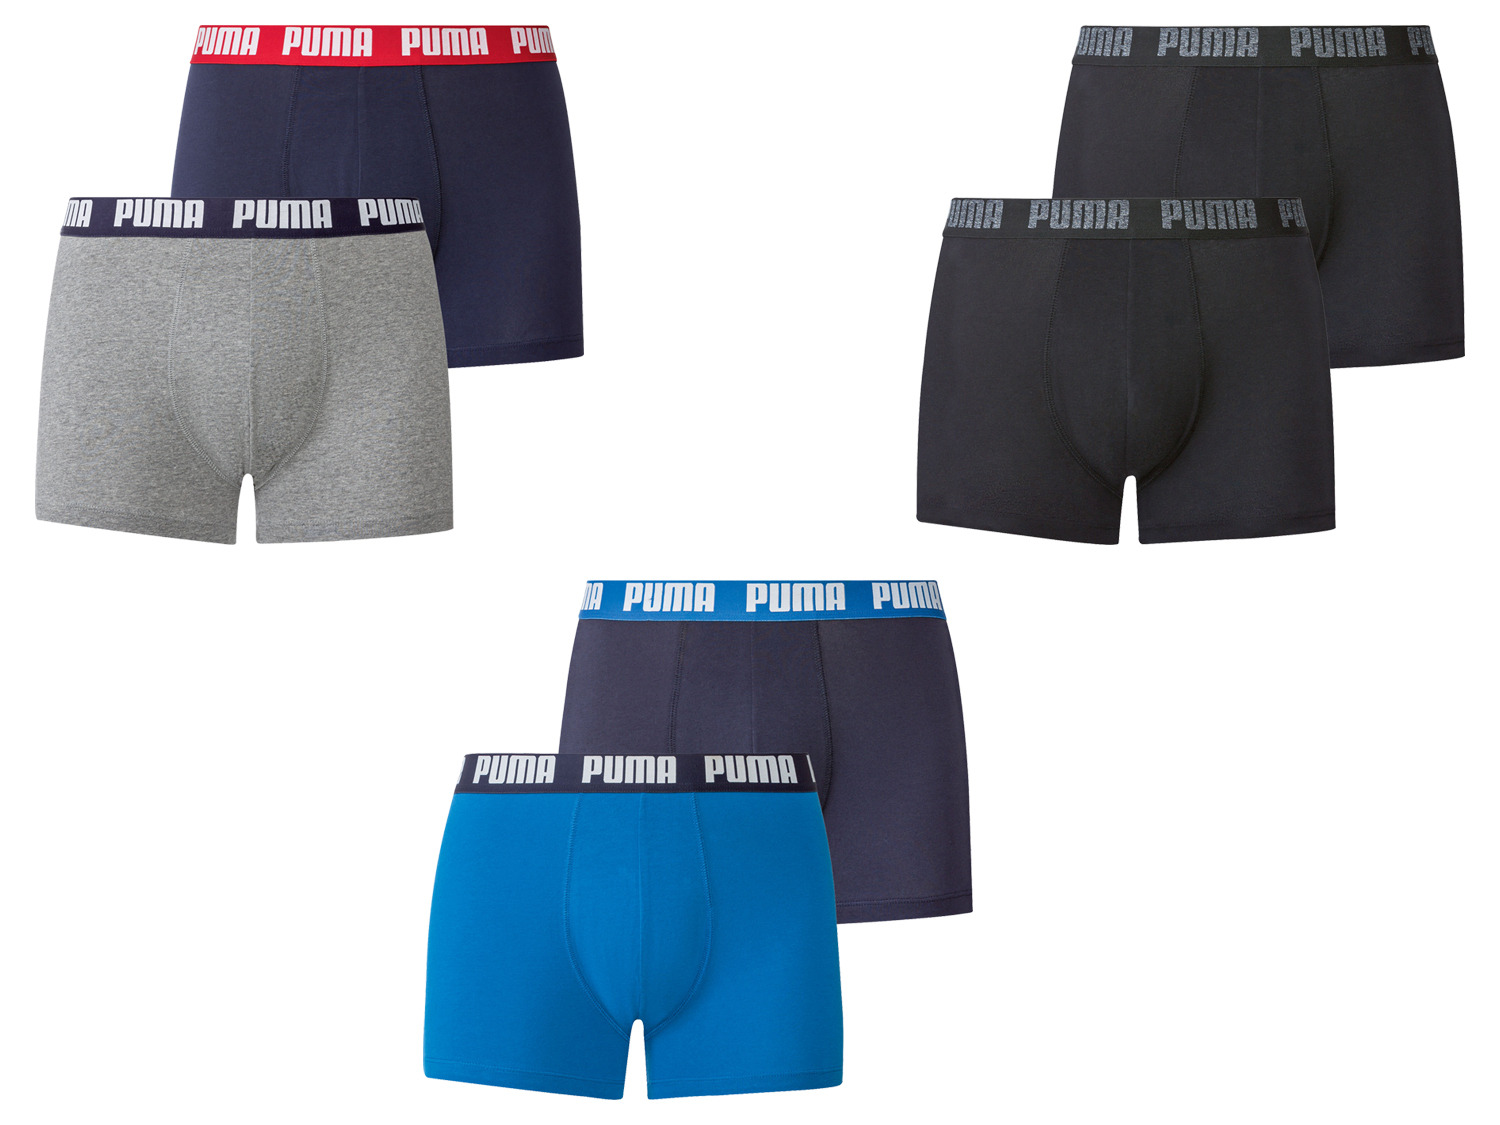 bolvormig activering beginsel Puma 2 heren boxershorts online kopen | LIDL